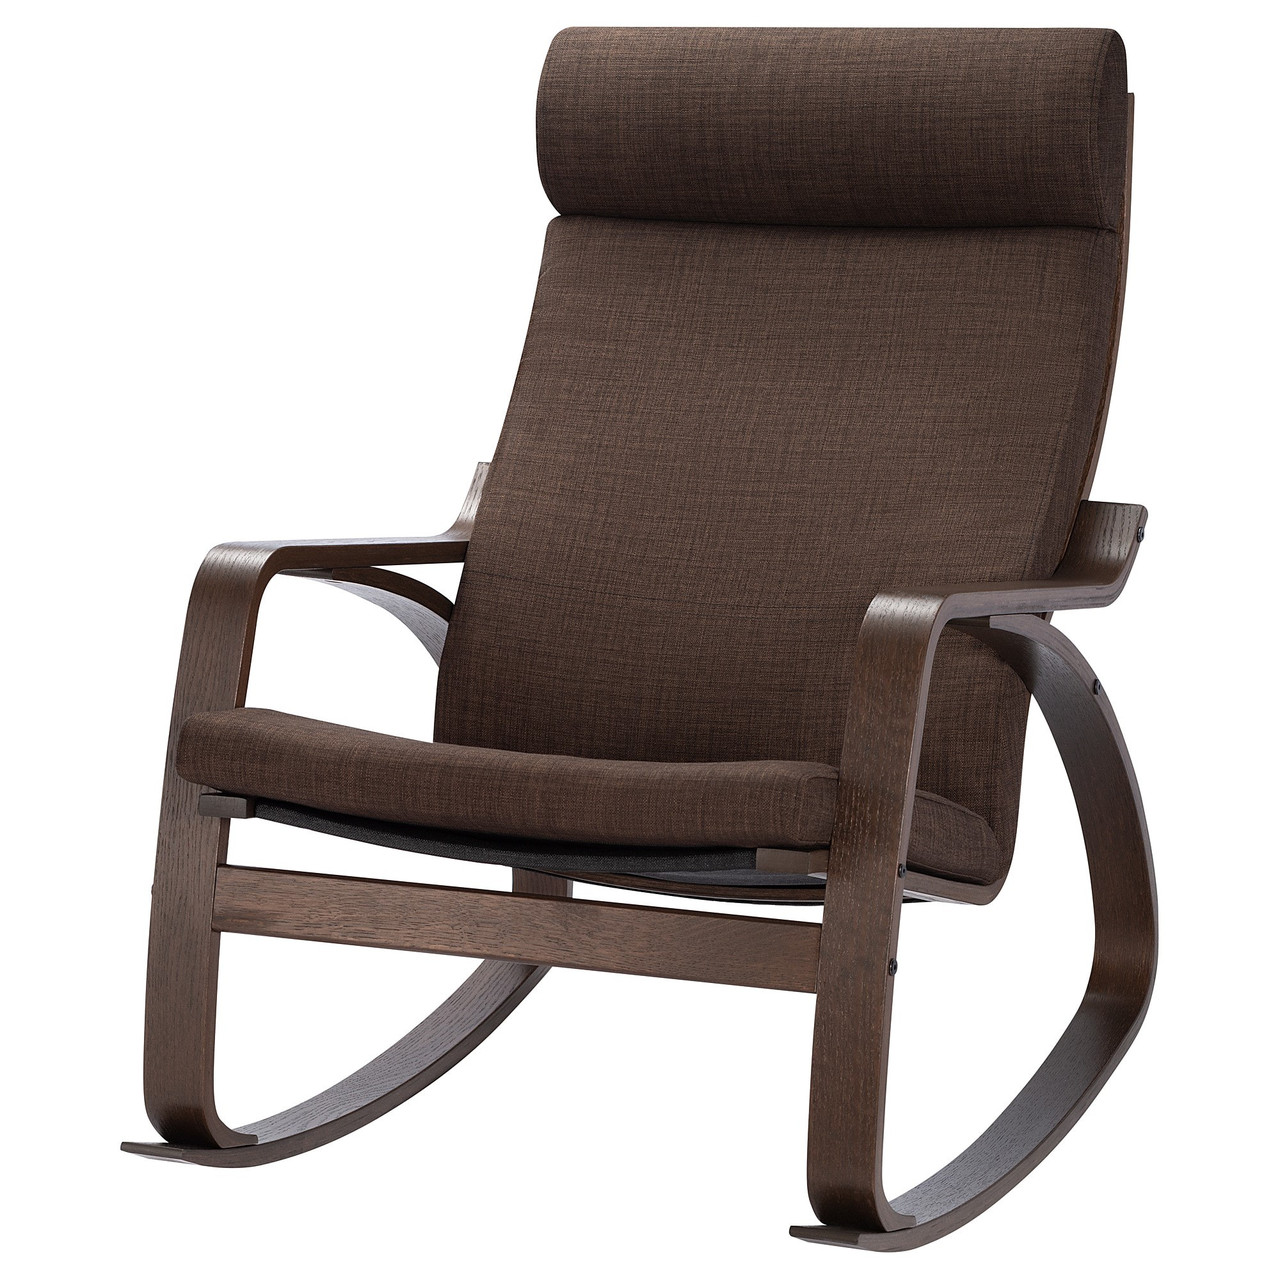 Кресло-качалка ПОЭНГ коричневый, Шифтебу коричневый ИКЕА, IKEA